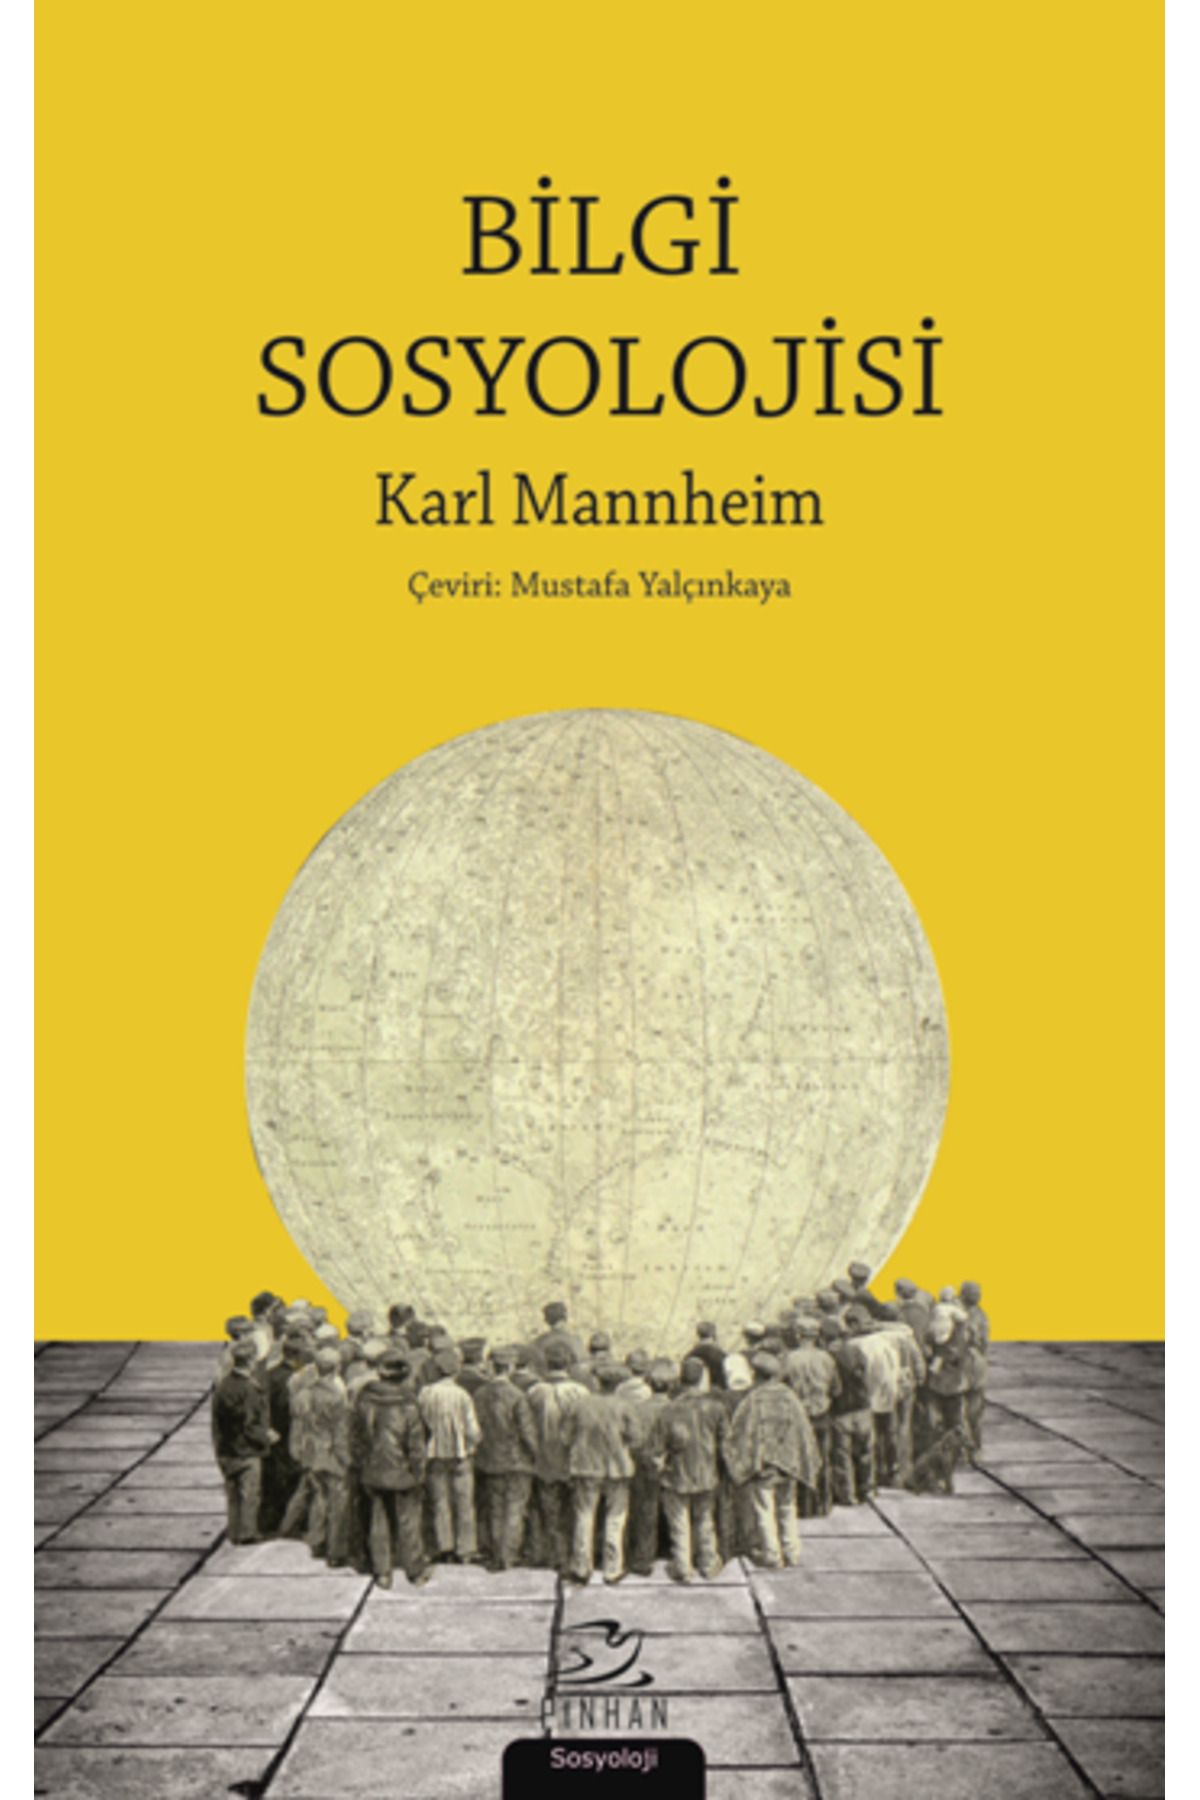 Pinhan Yayıncılık Bilgi Sosyolojisi kitabı - Karl Mannheim - Pinhan Yayıncılık